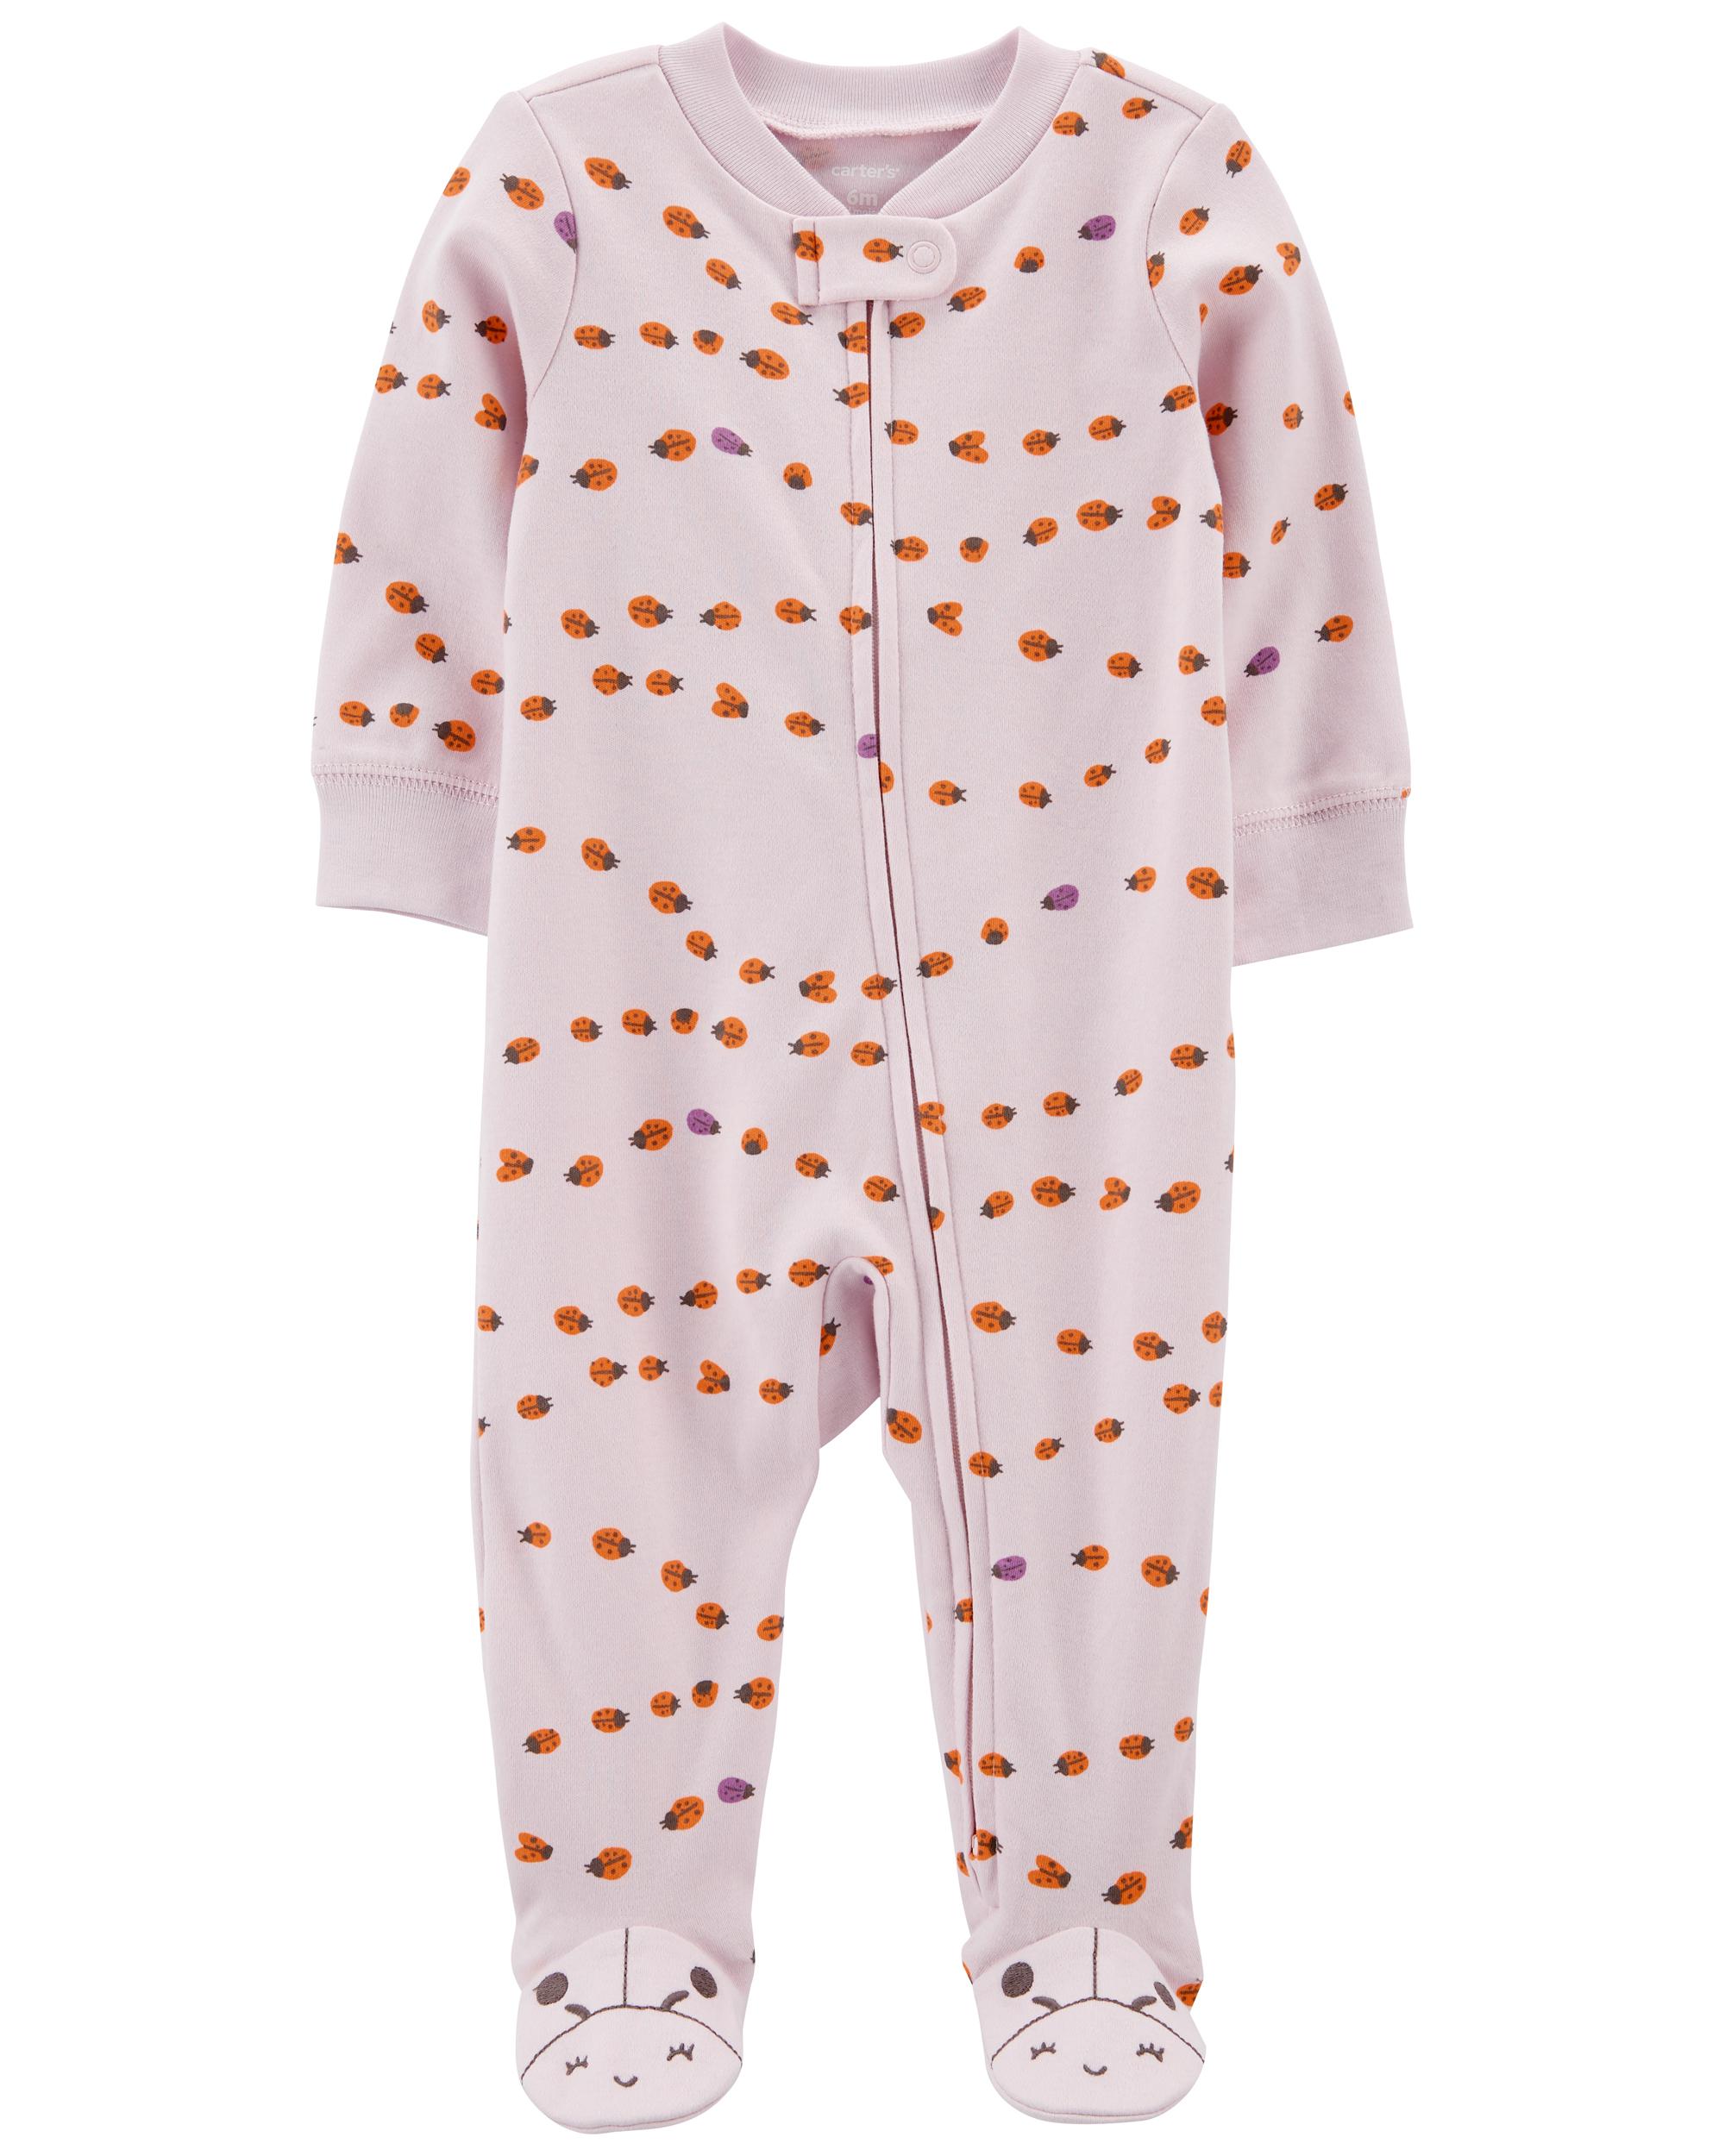 Baby Ladybug 2-Way Zip Sleeper Pyjamas